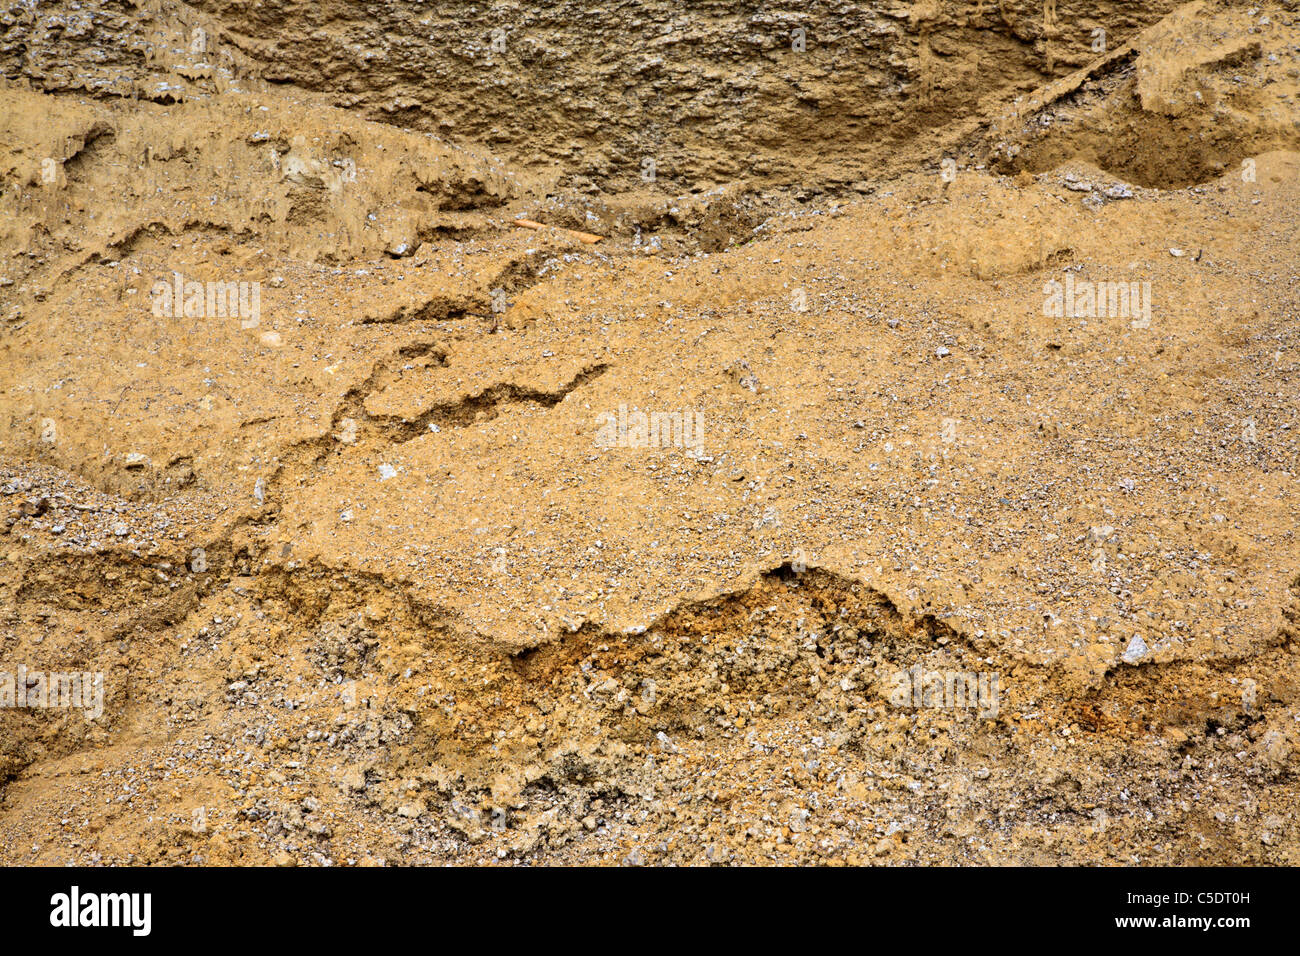 Abstract della buca di sabbia a Bartlett foresta sperimentale in Bartlett, New Hampshire USA Foto Stock